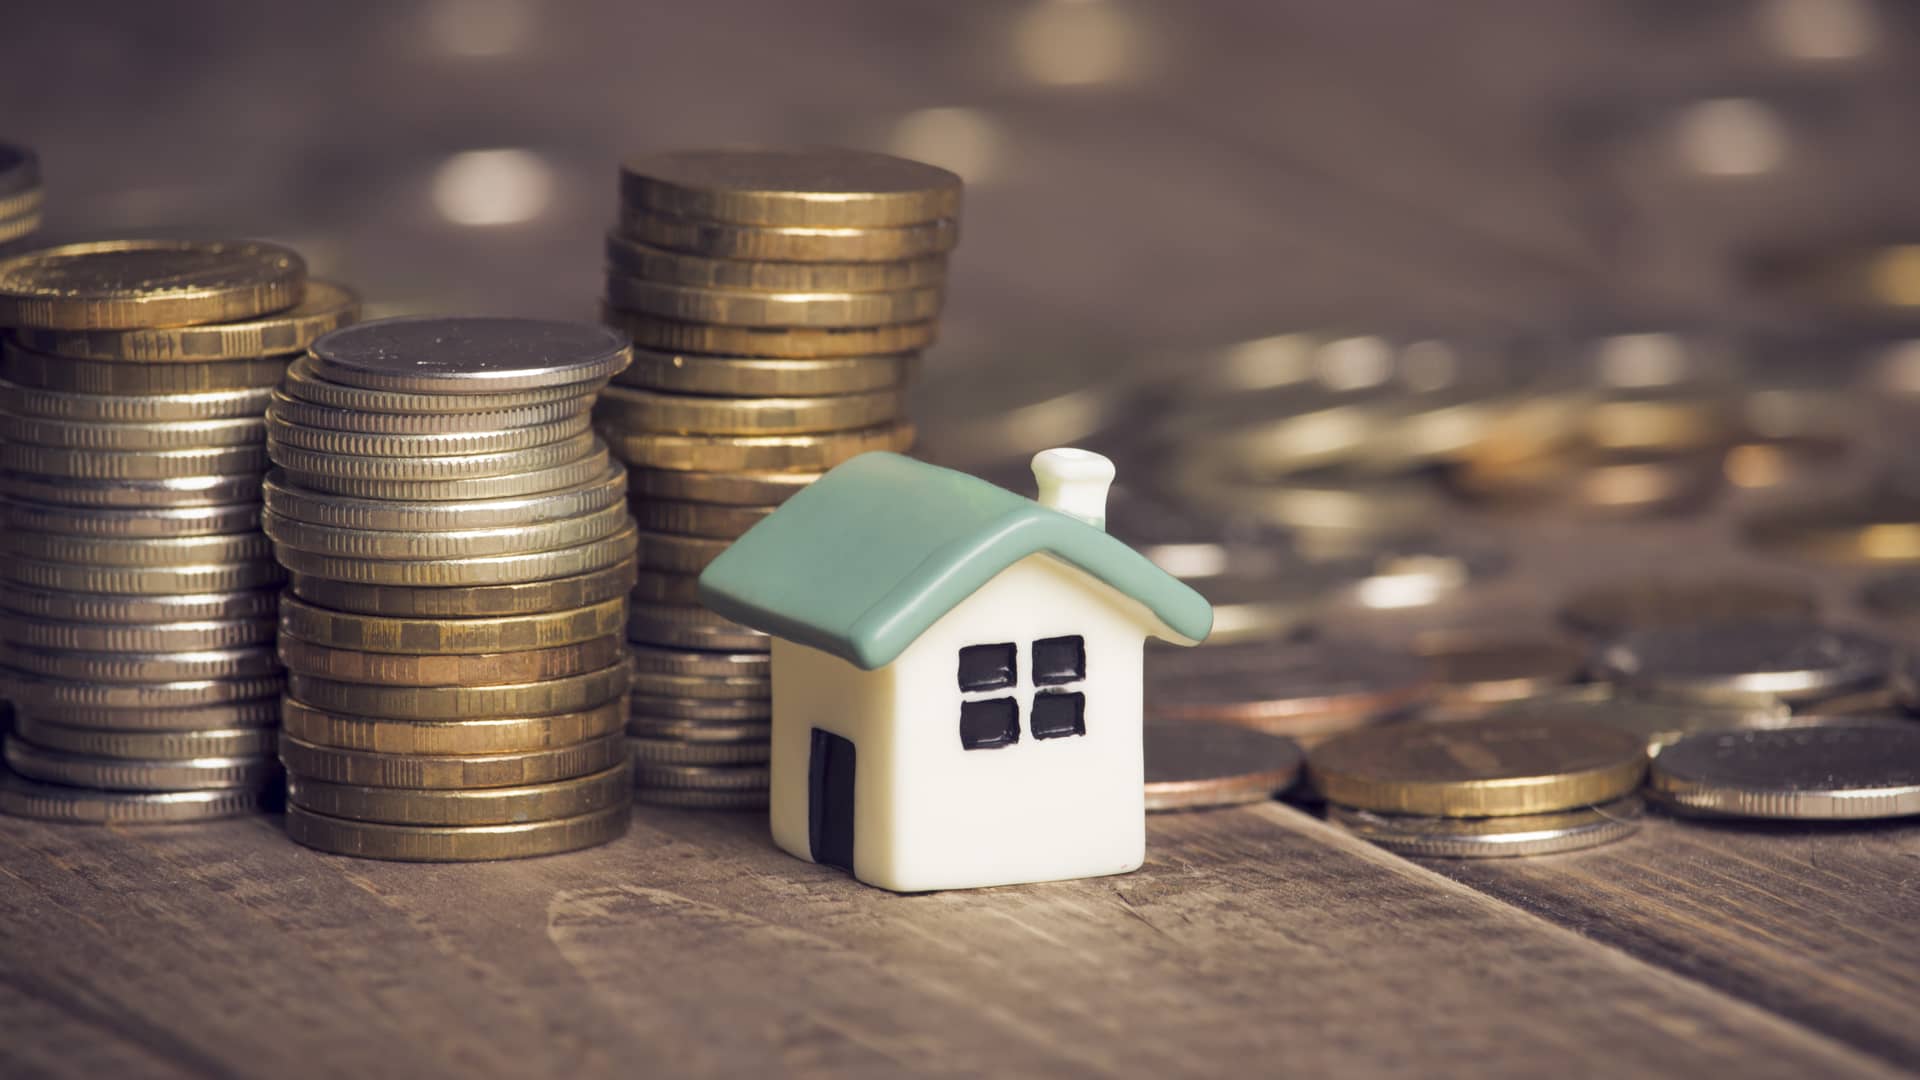 Montañas de monedas rodeando una pequeña casa de juguete simulando cuando se dejan de pagar los intereses de una hipoteca